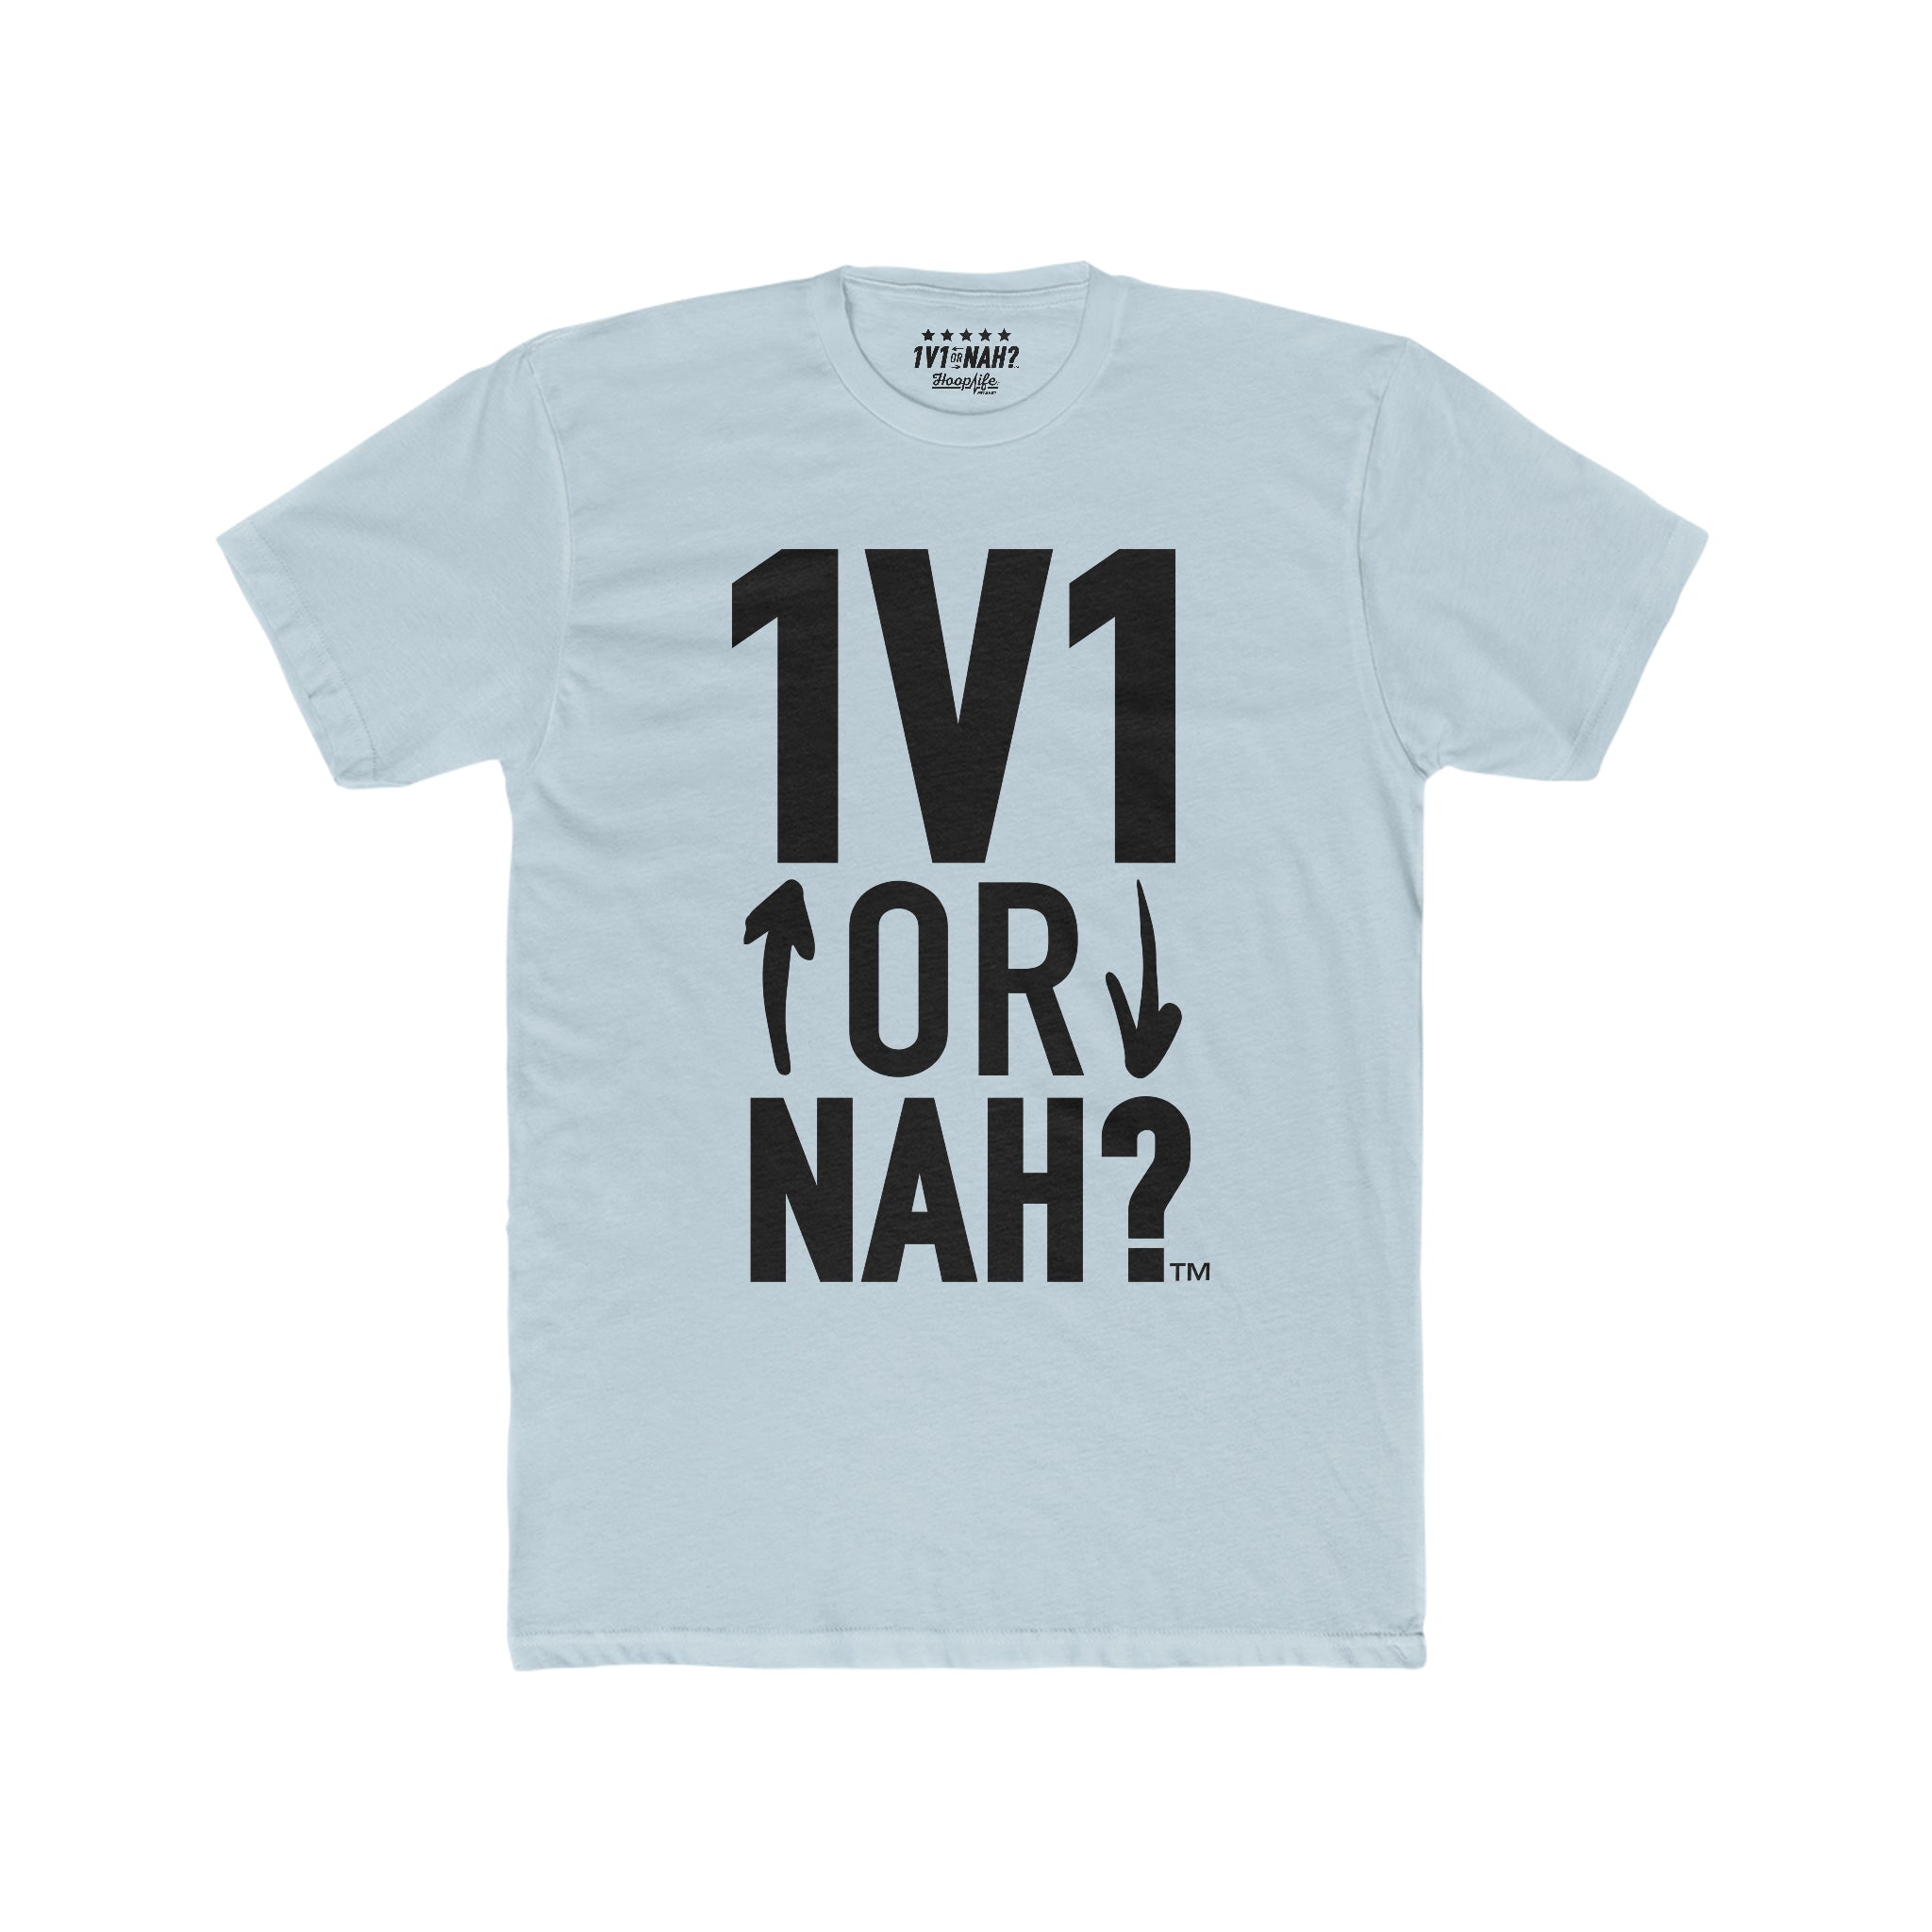 1V1 or NAH?™